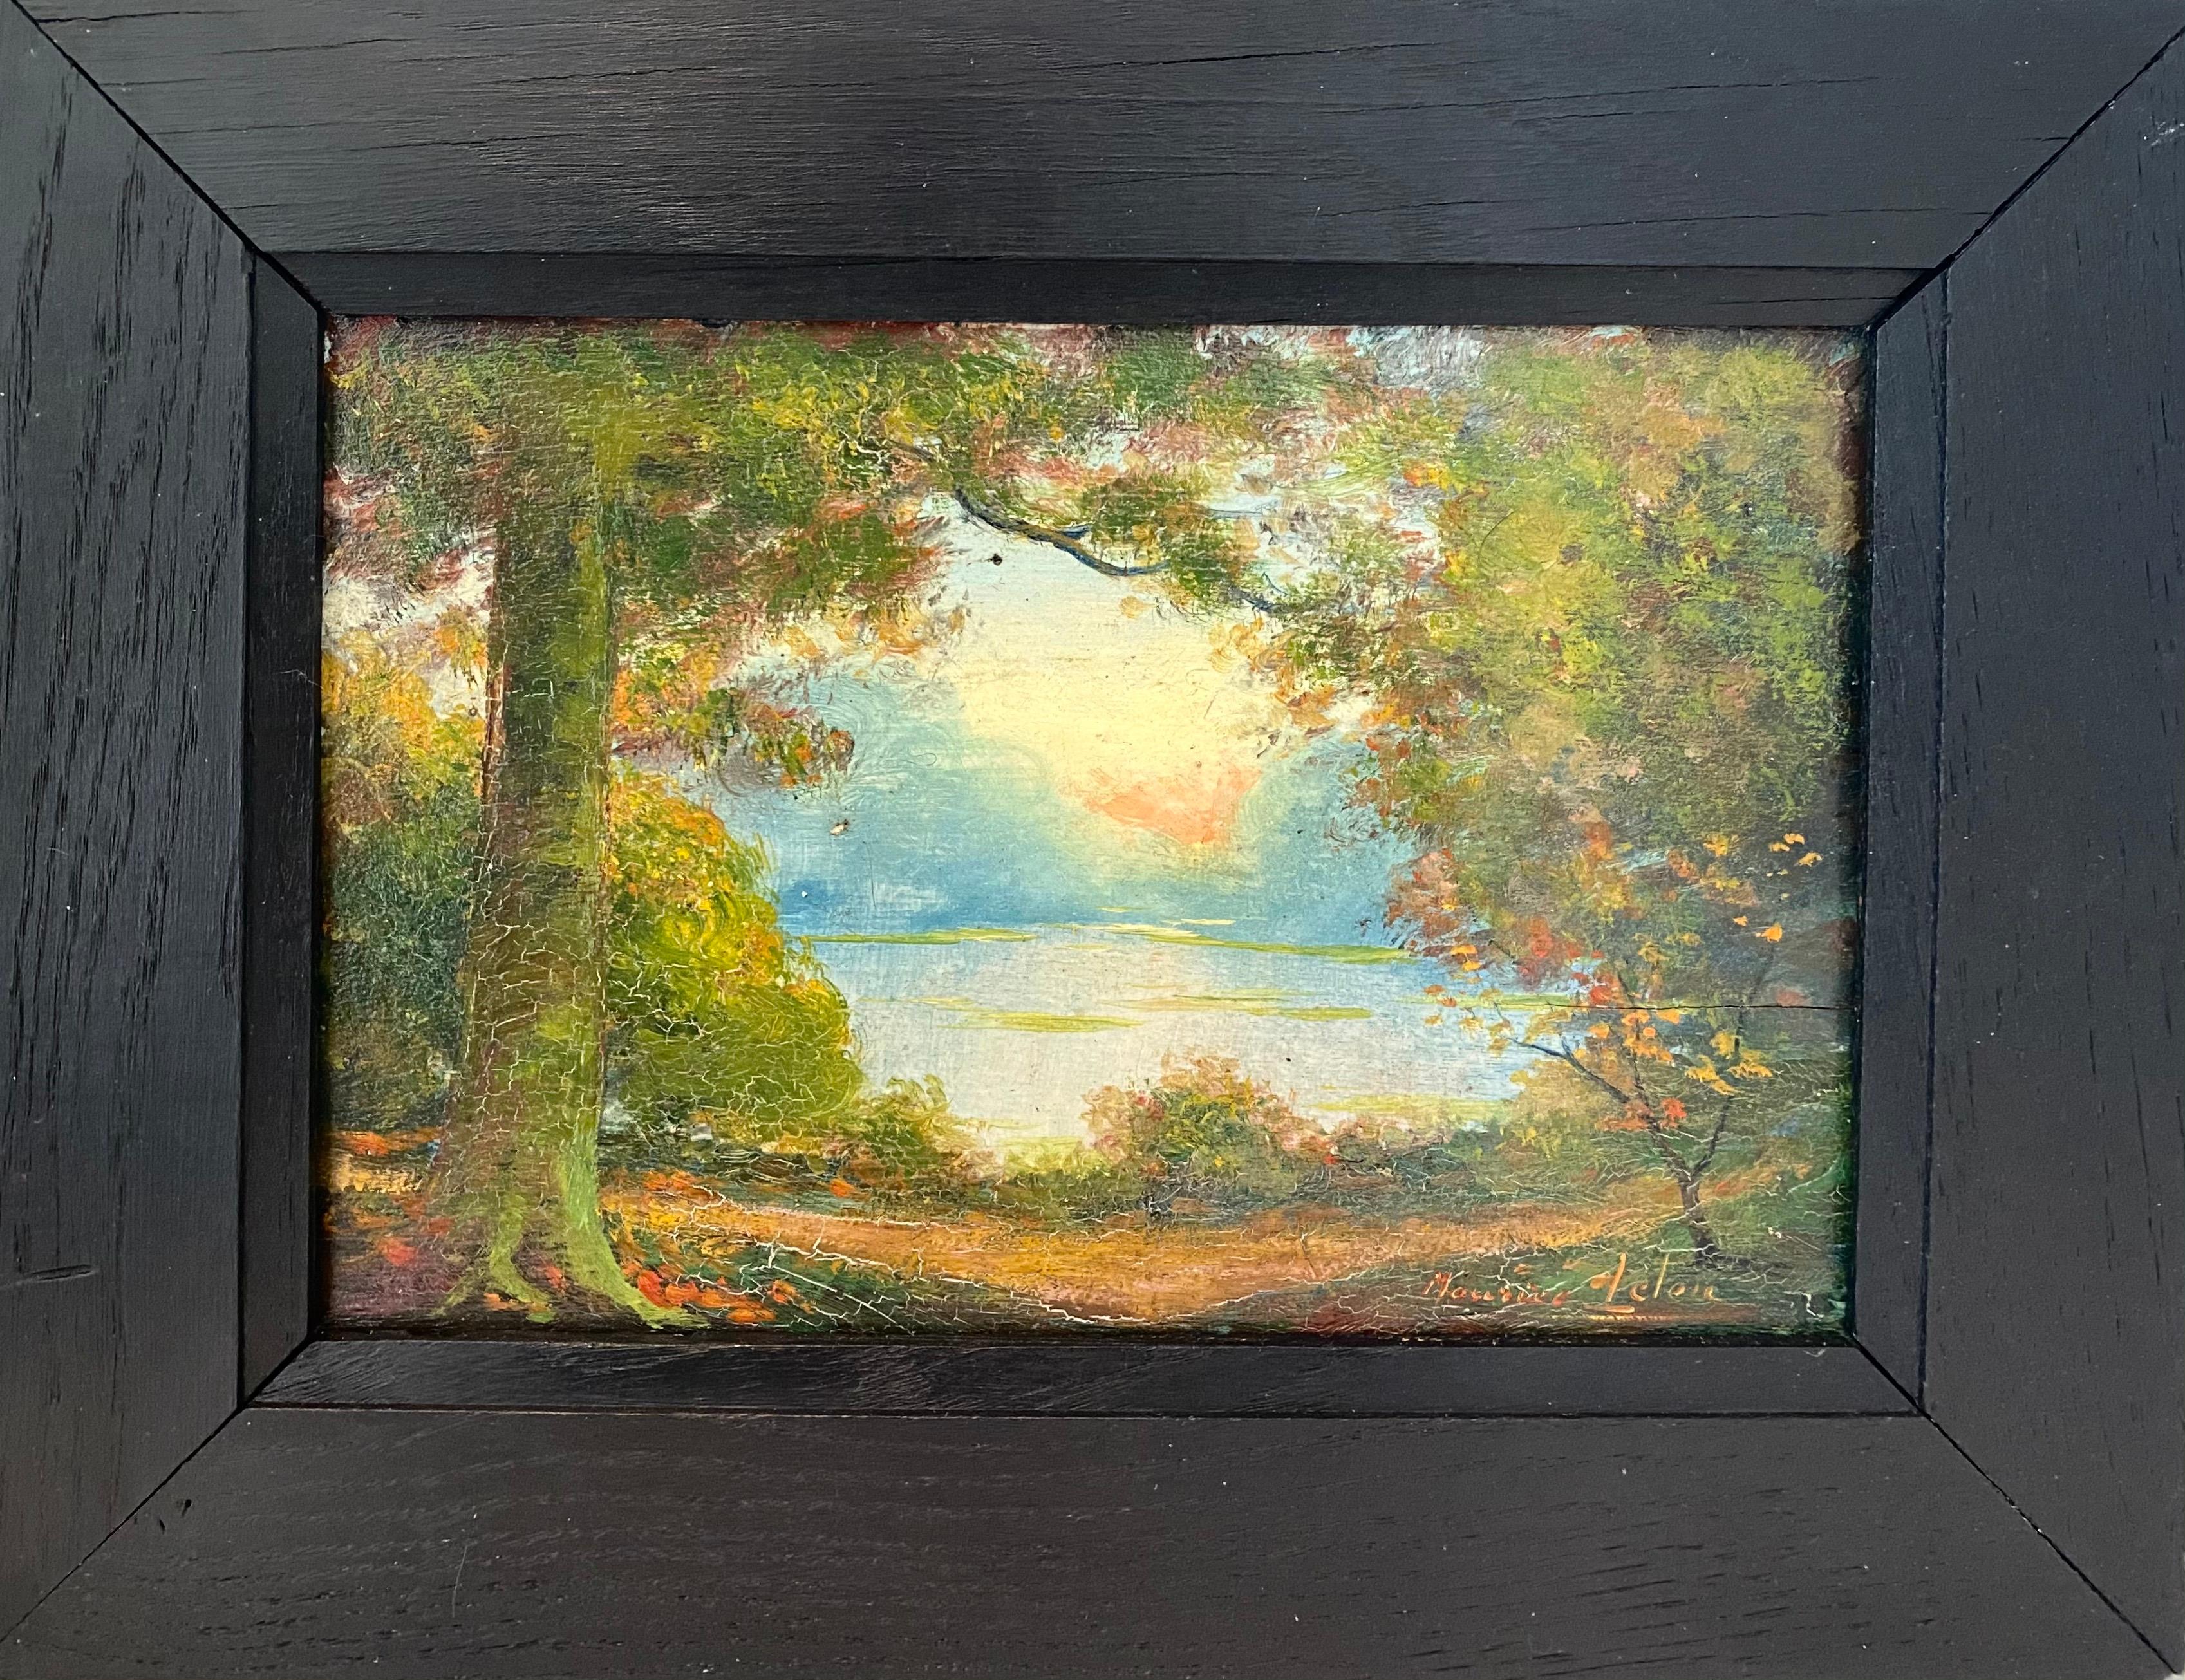 Maurice Leleu Landscape Painting - French Impressionist Ecole de Paris Painting - Sunset in a Park - Landscape Lake